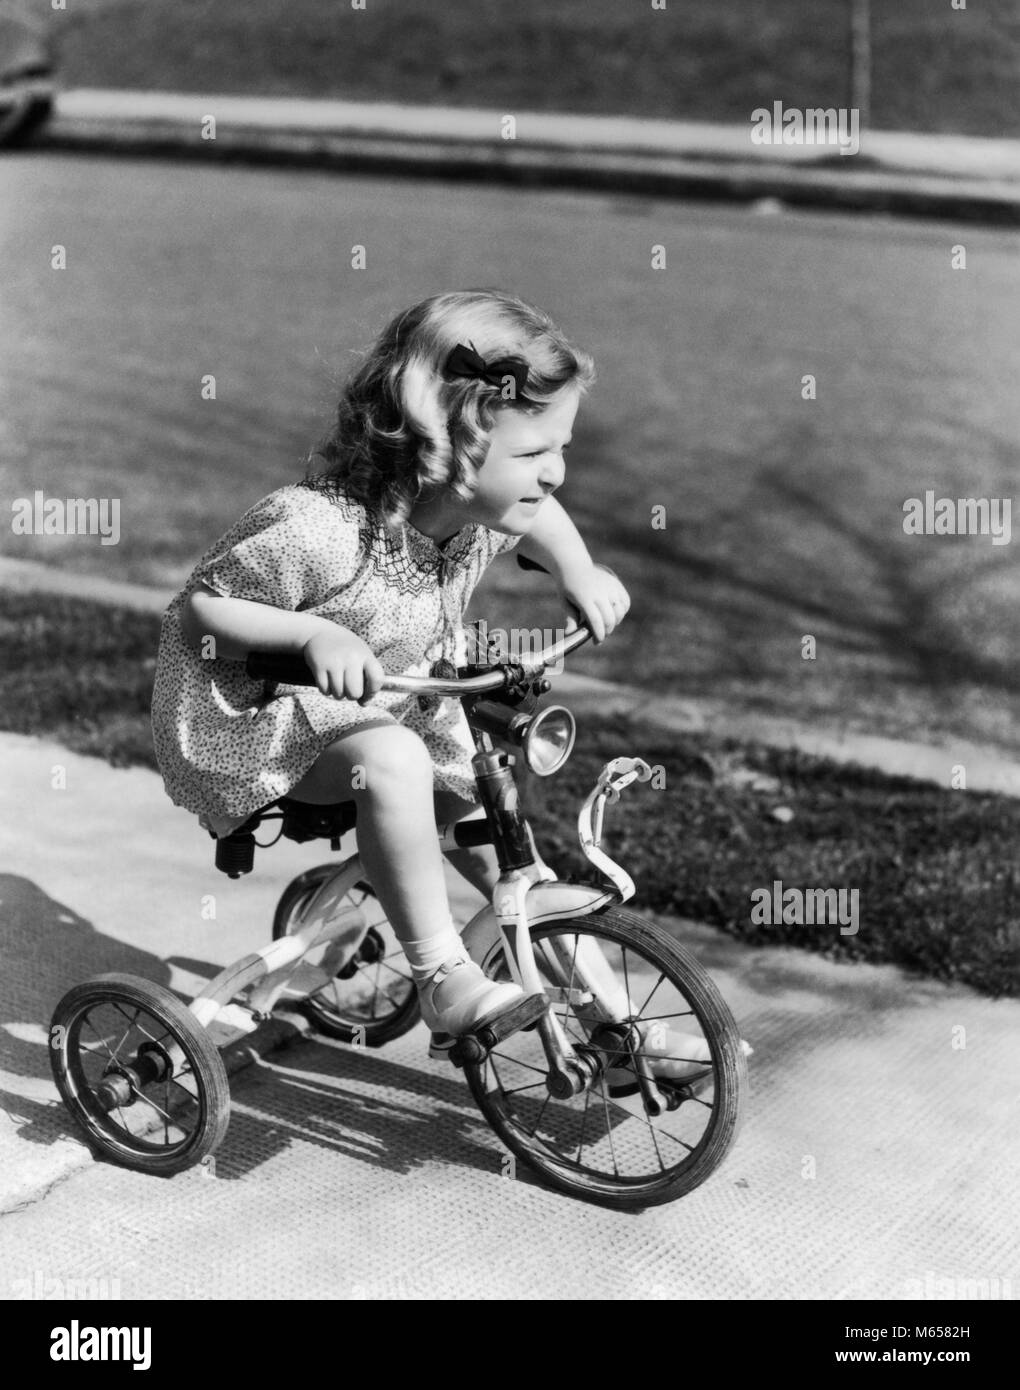 1930s 1940s ragazza triciclo di equitazione sul marciapiede - J8116 HAR001 HARS BIKES 3-4 anni la felicità di triciclo elevato angolo emozione ricreazione novellame pedalando TRIKE B&W in bianco e nero di etnia caucasica DEMON di vecchio stile Foto Stock